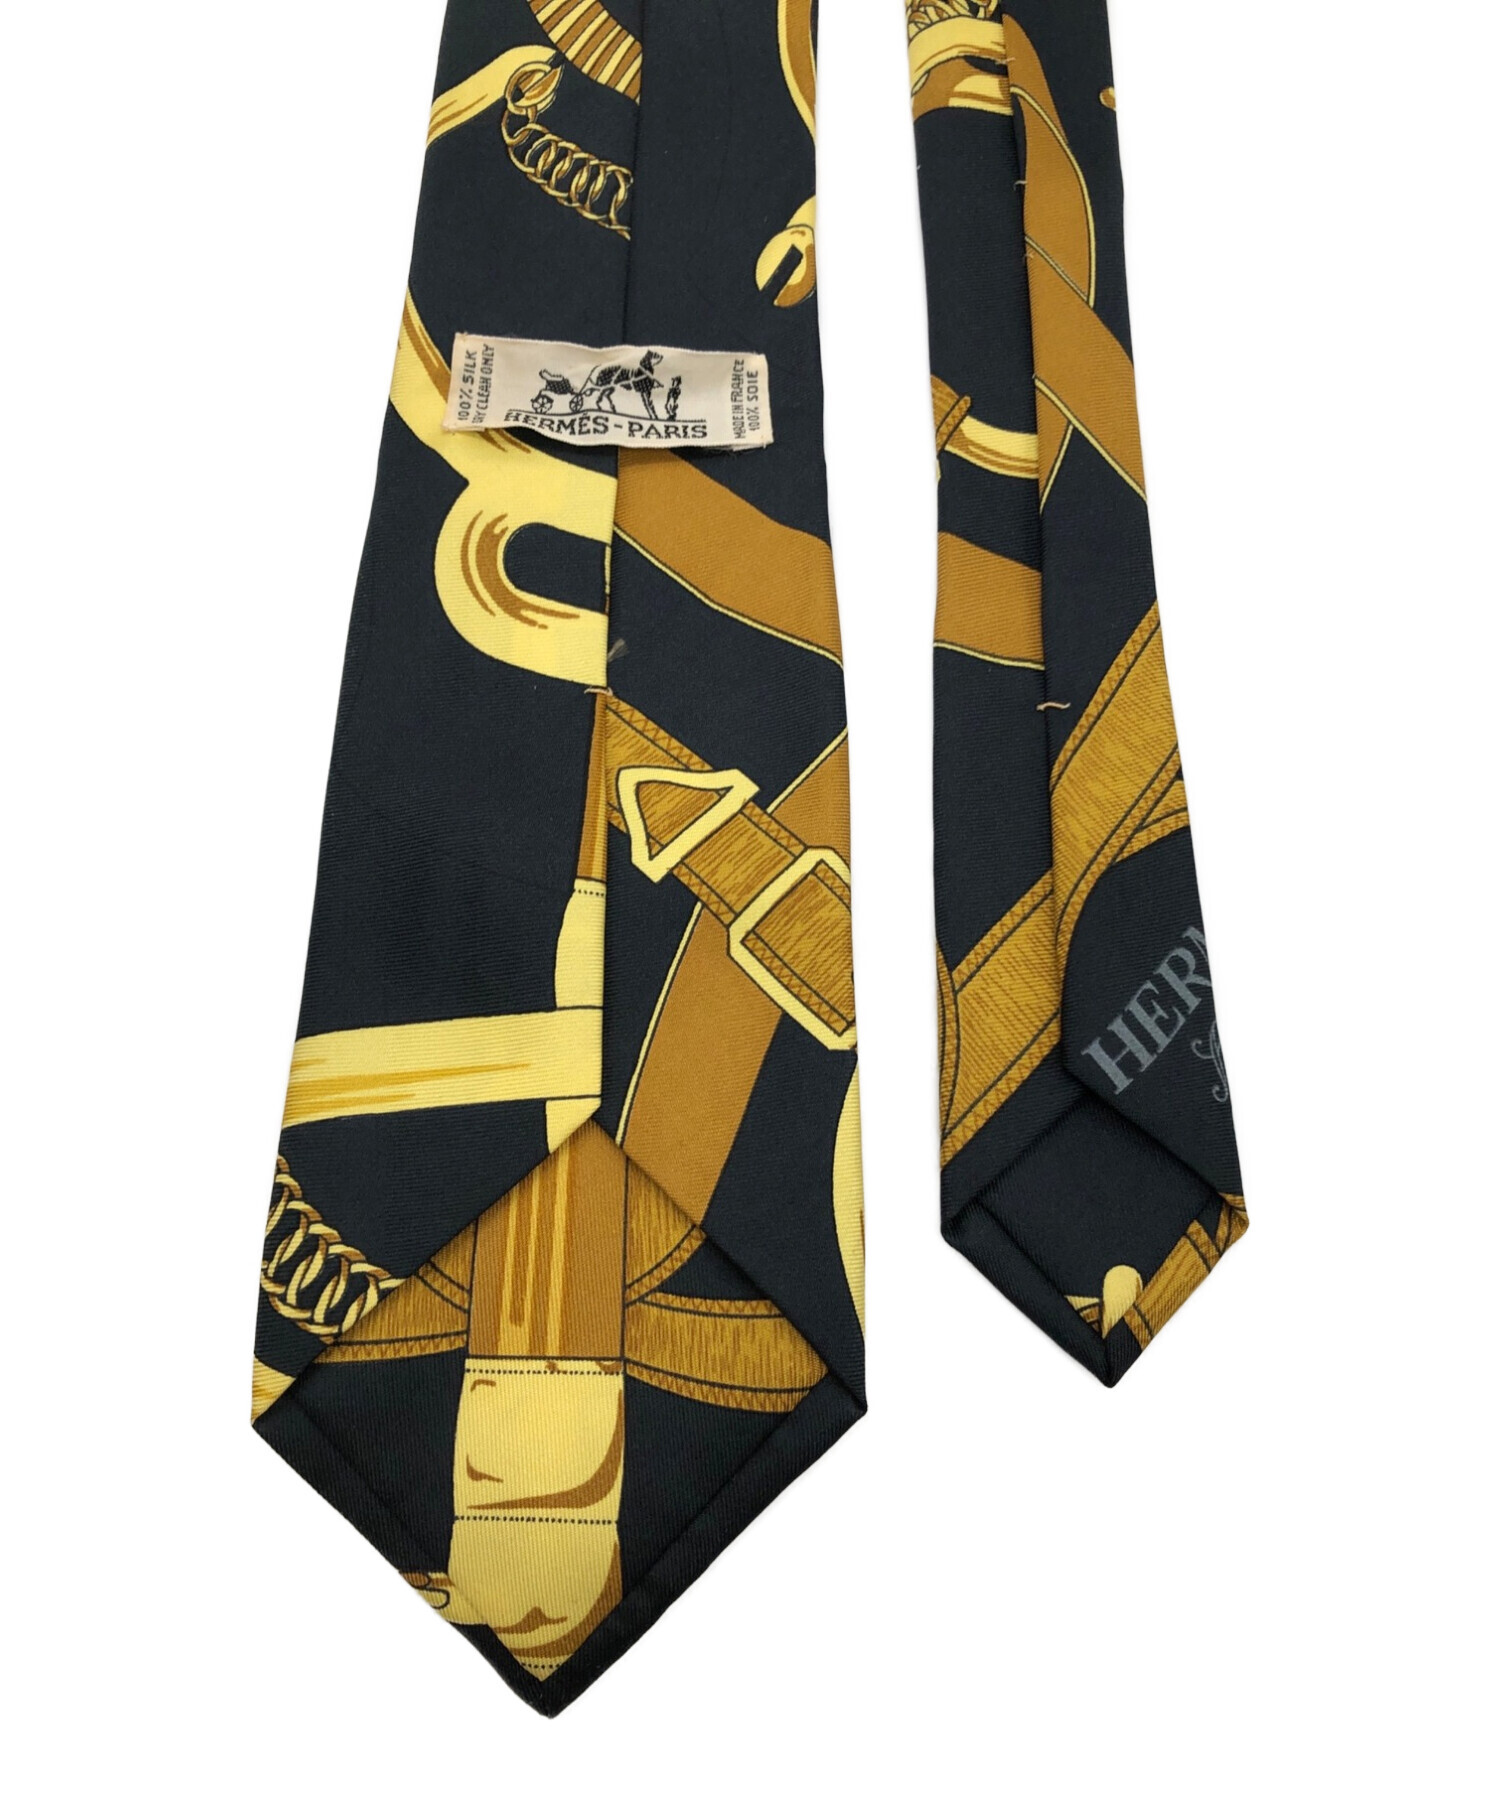 HERMES (エルメス) スカーフ柄ネクタイ ブラック×イエロー サイズ:表記無し